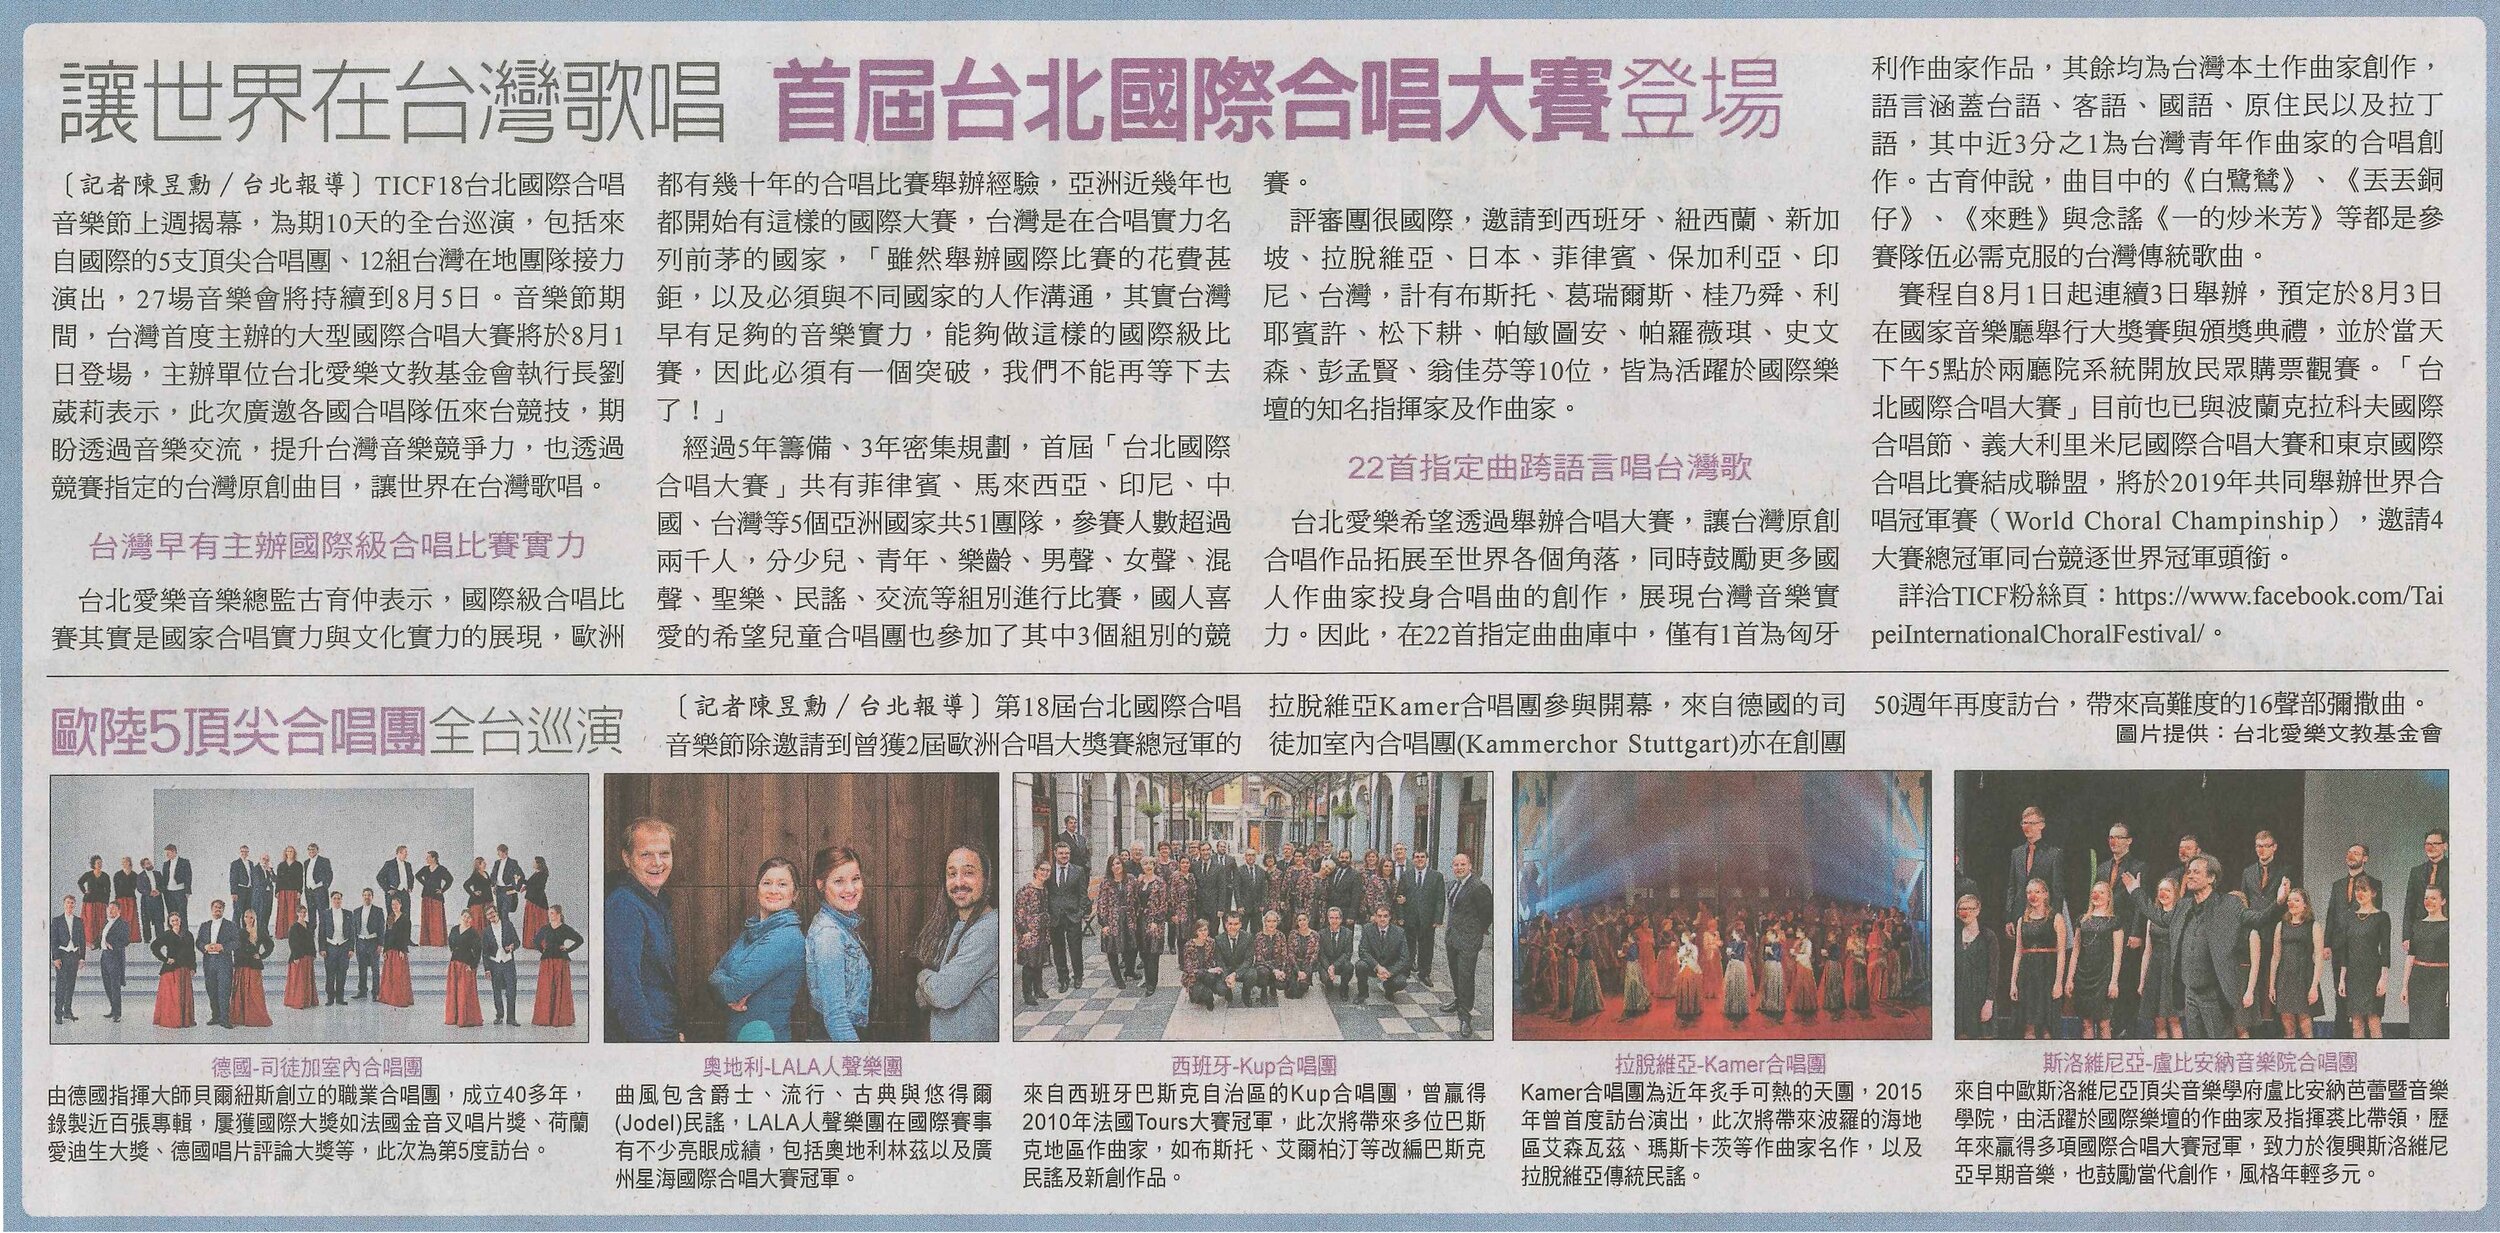 【自由時報】讓世界在台灣歌唱 首屆台北國際合唱大賽登場